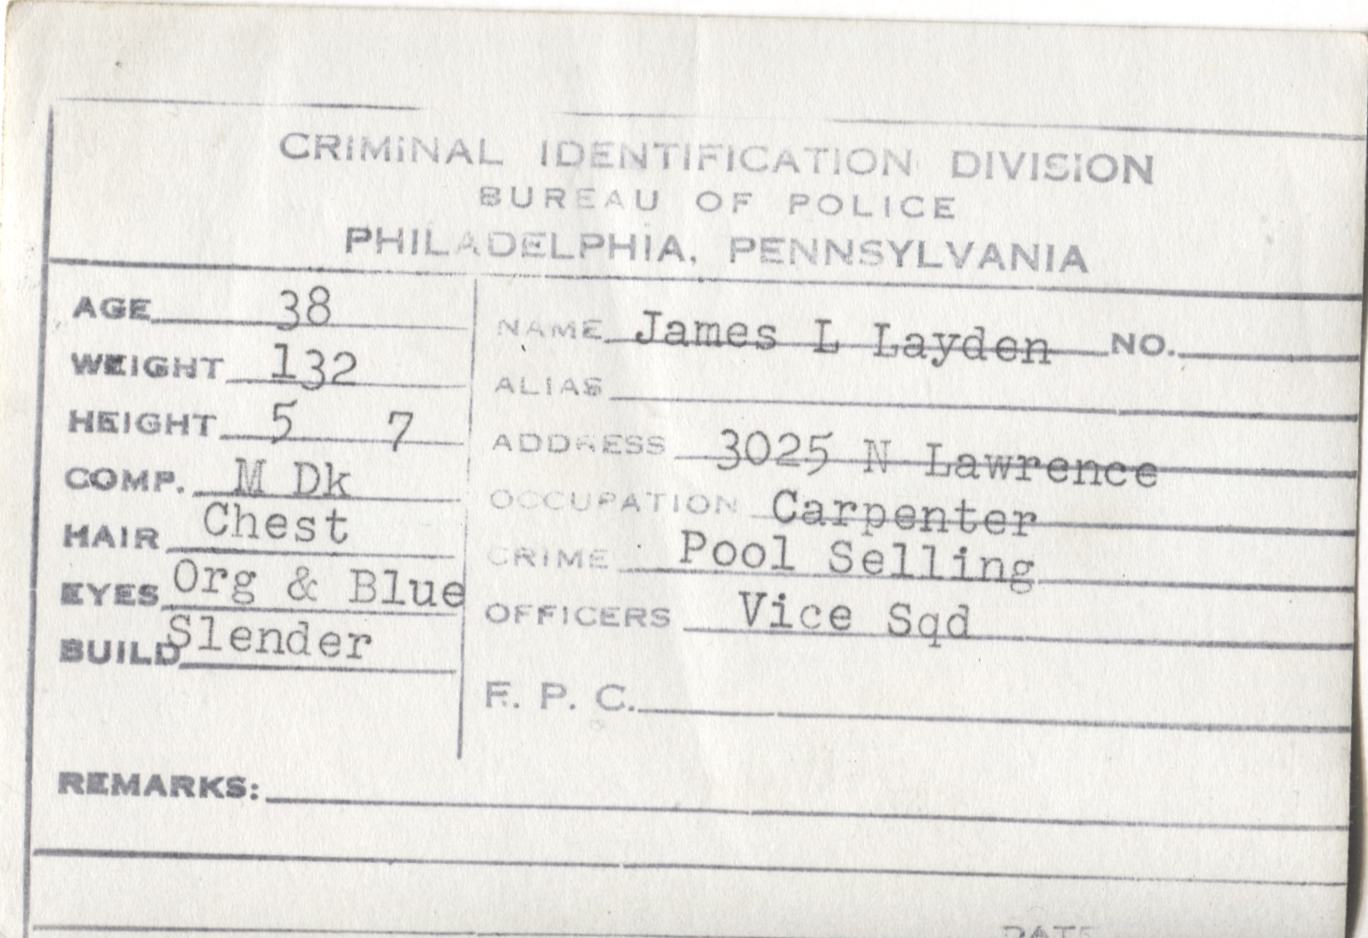 James L. Layden Mugshot - Arrested on 4/24/1948 for Poolselling